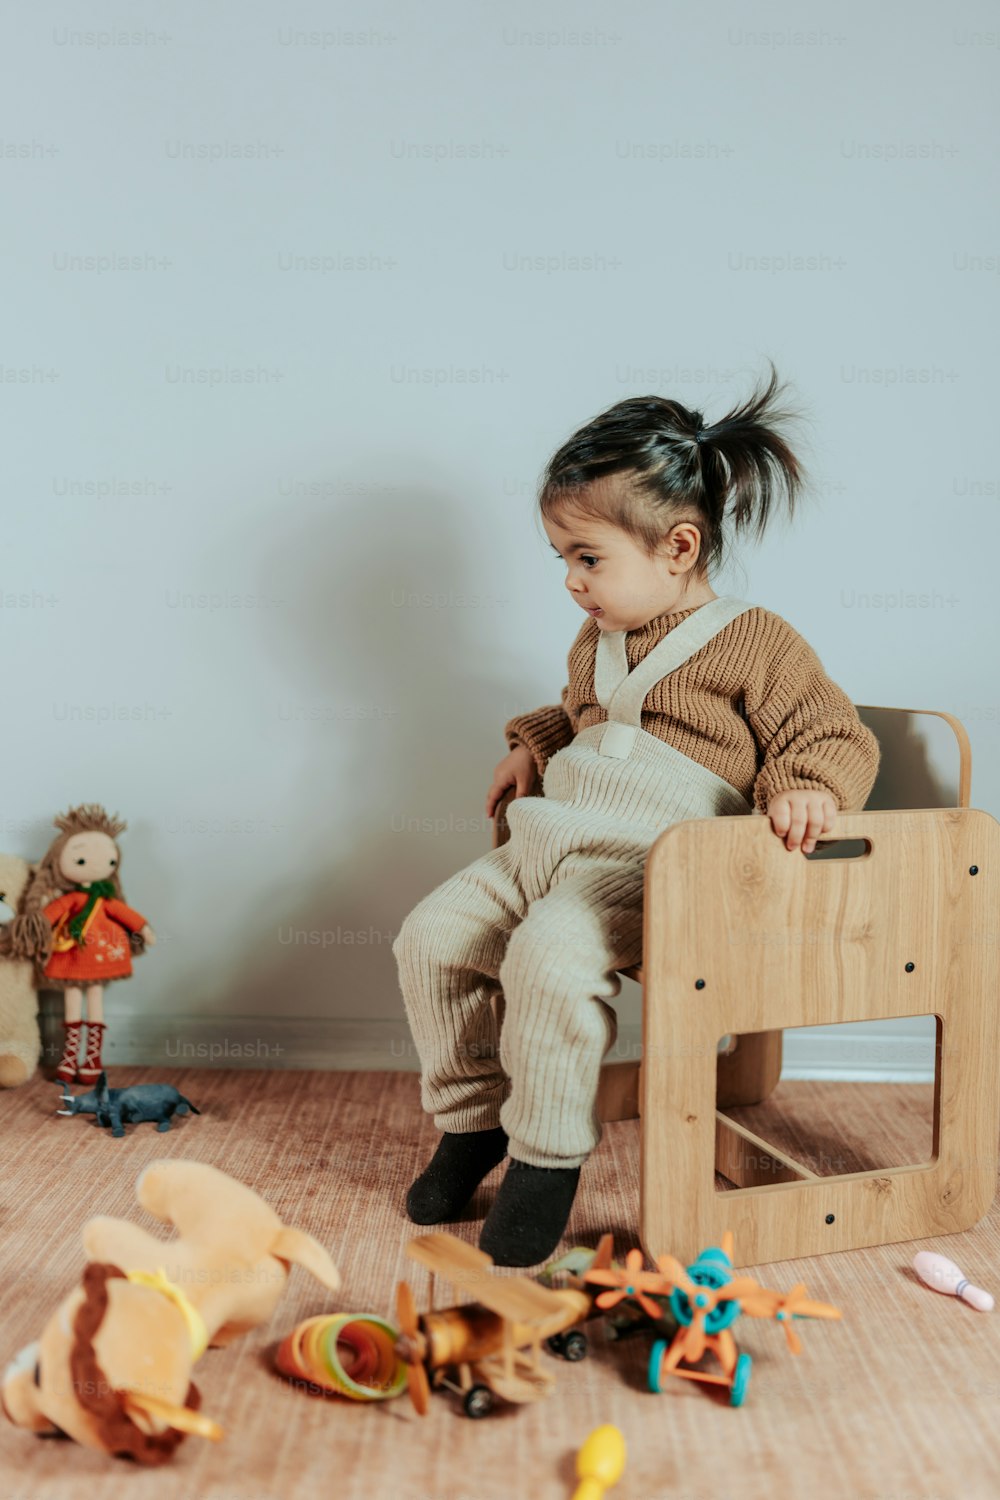 una niña sentada en una silla con juguetes a su alrededor